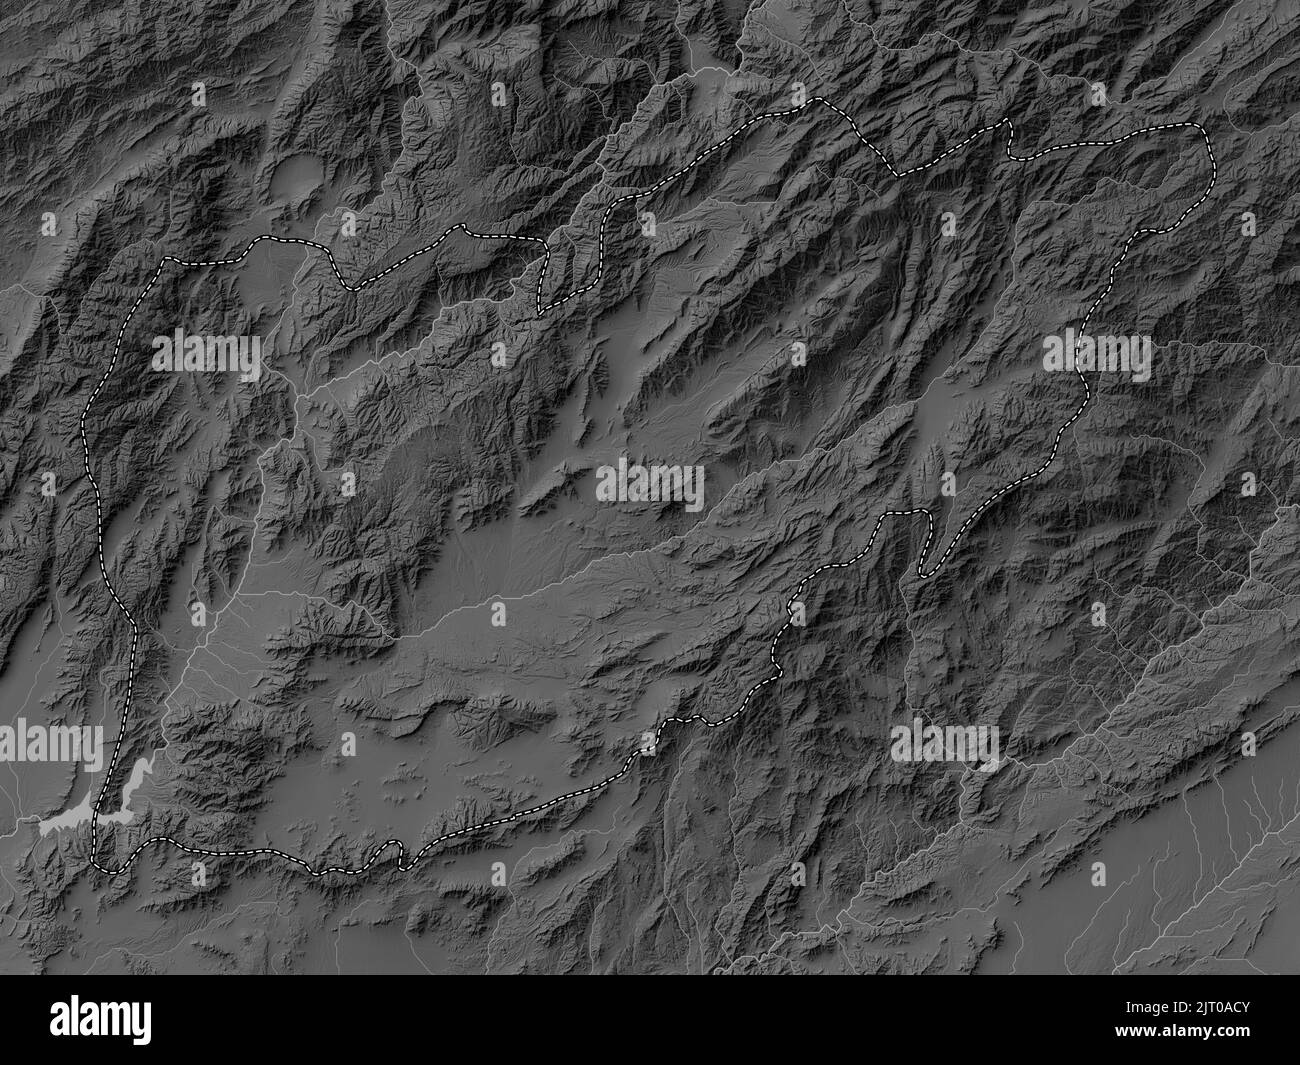 Uruzgan, provincia dell'Afghanistan. Mappa in scala di grigi con laghi e fiumi Foto Stock